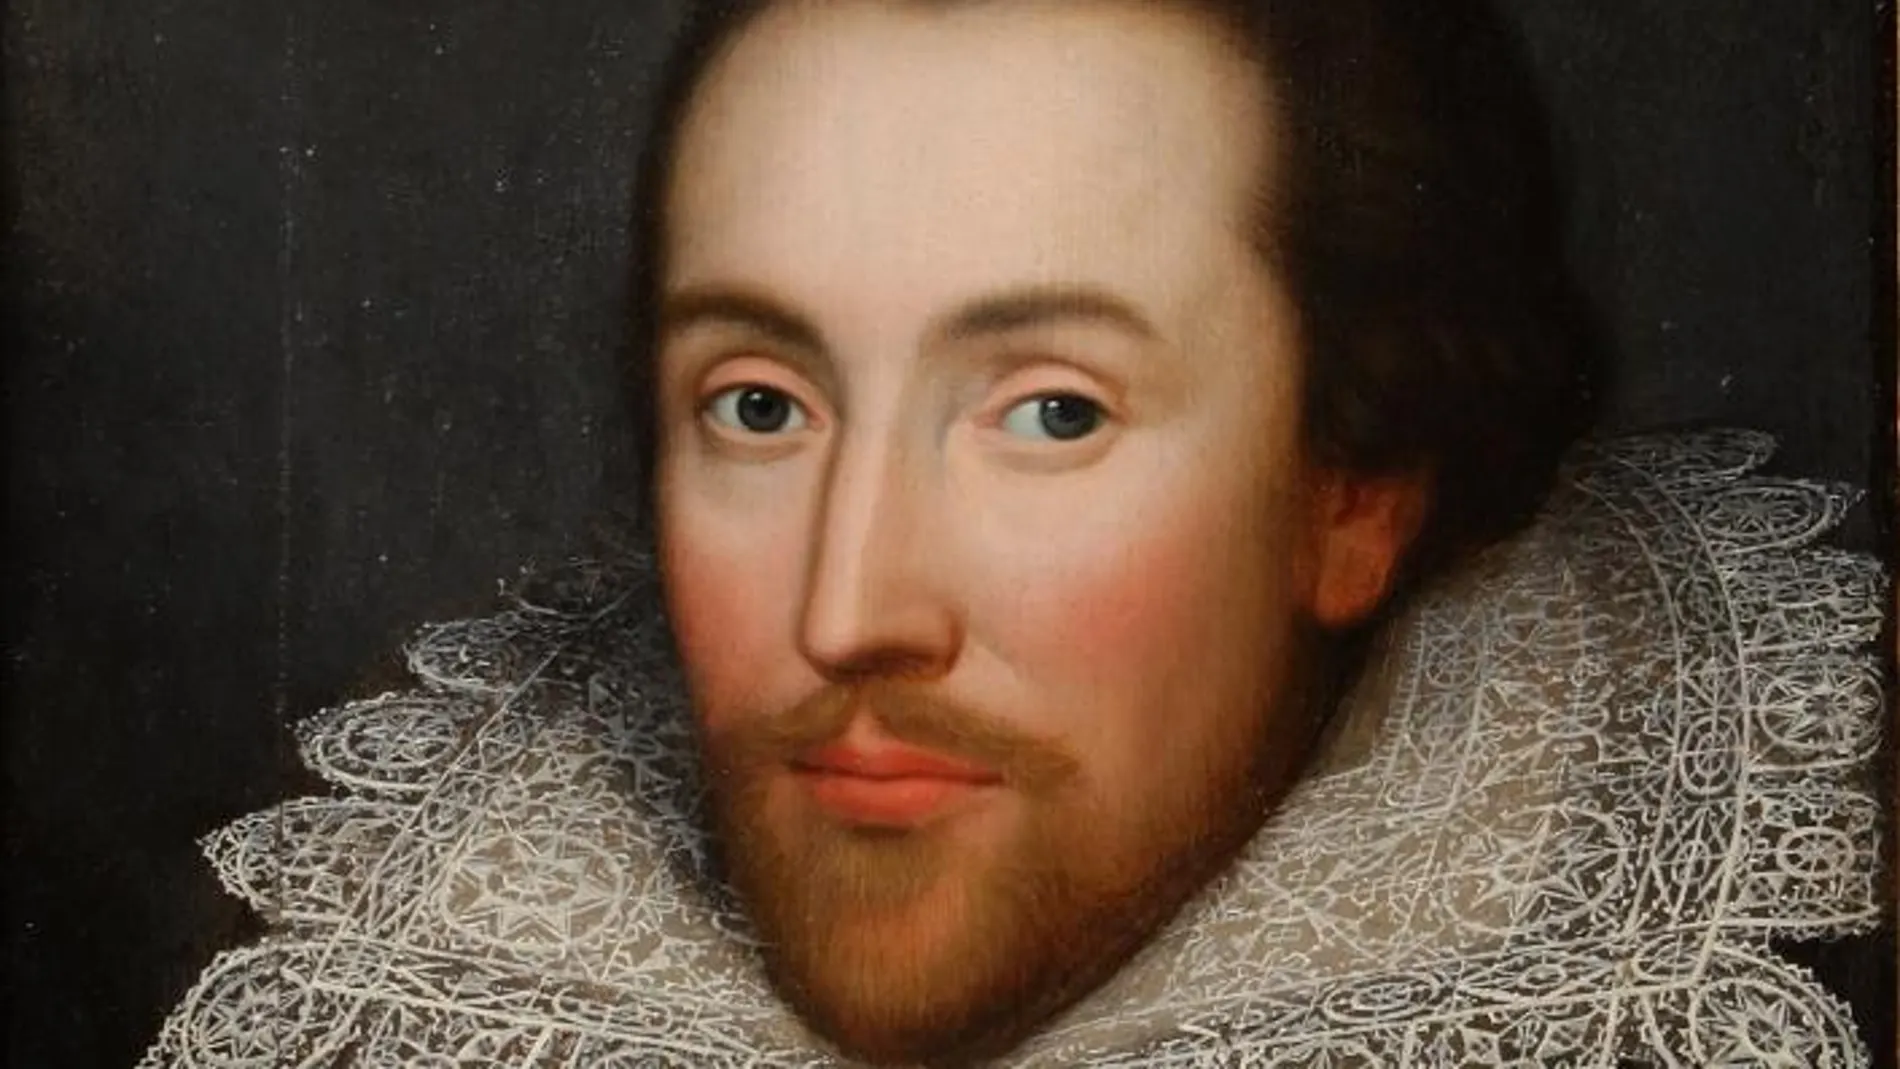 Retrato de William Shakespeare